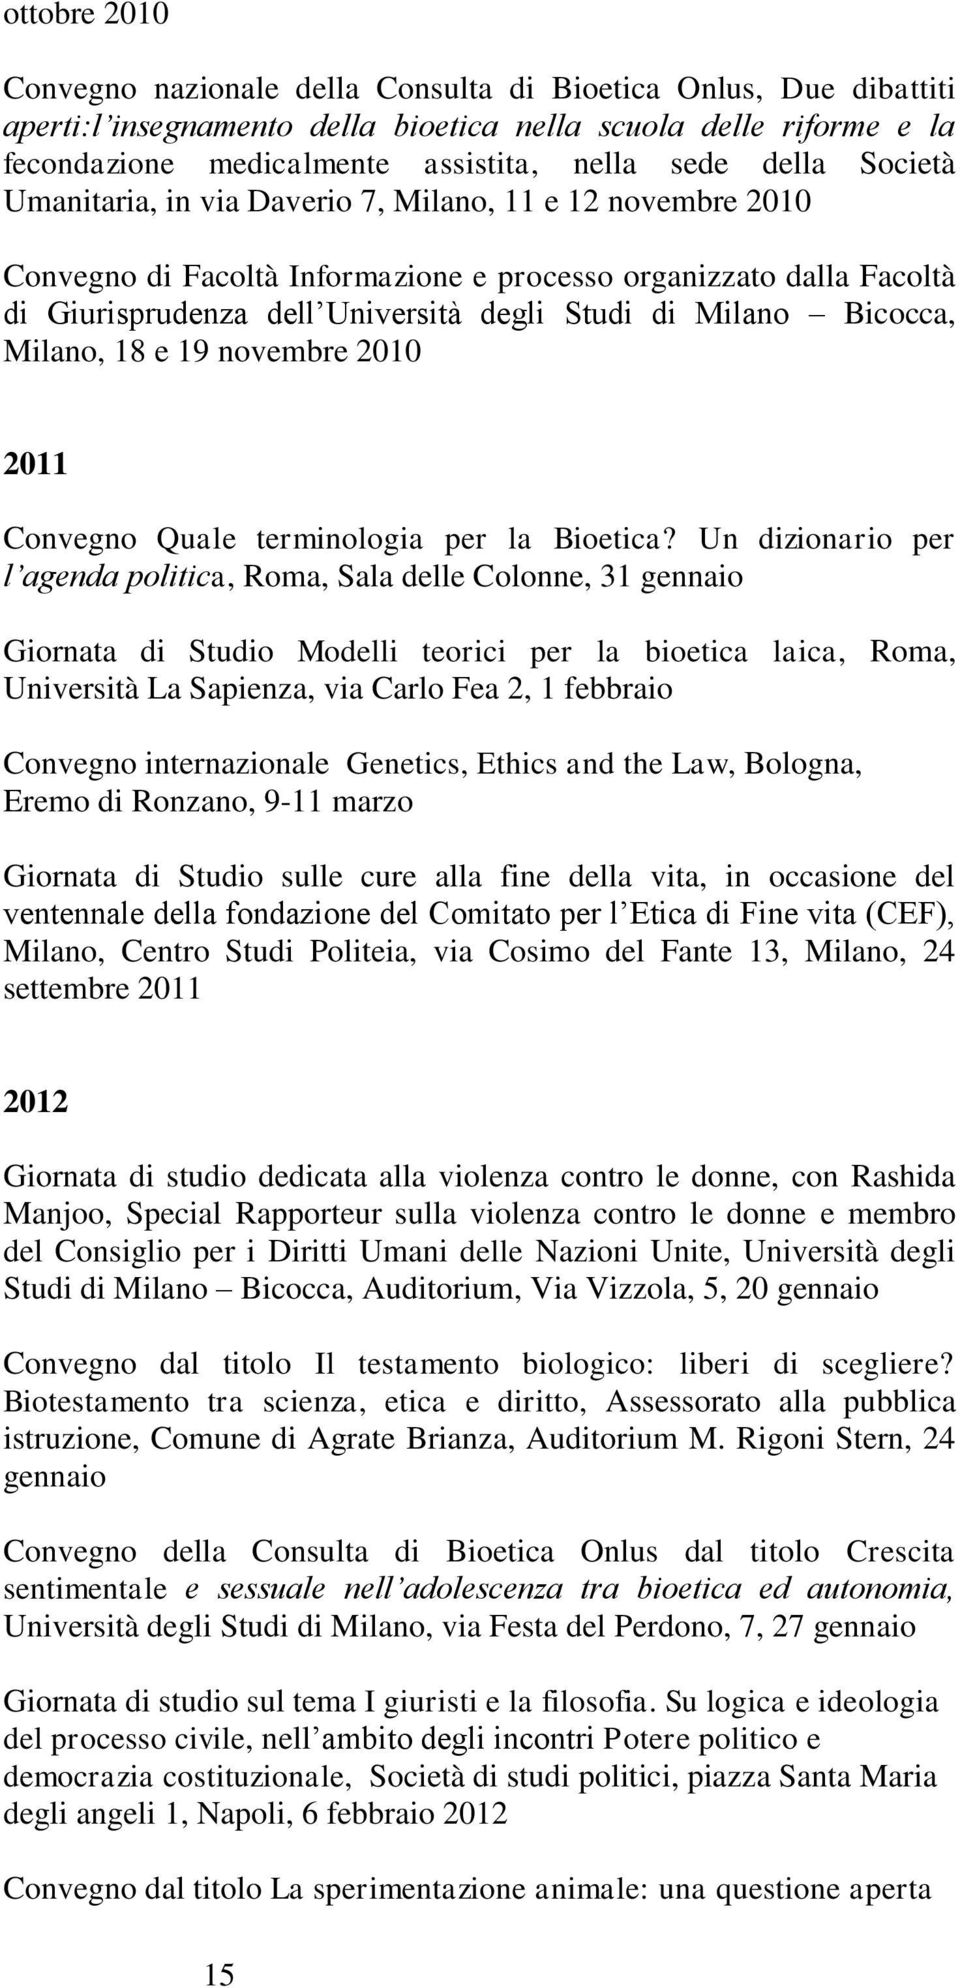 Bicocca, Milano, 18 e 19 novembre 2010 2011 Convegno Quale terminologia per la Bioetica?